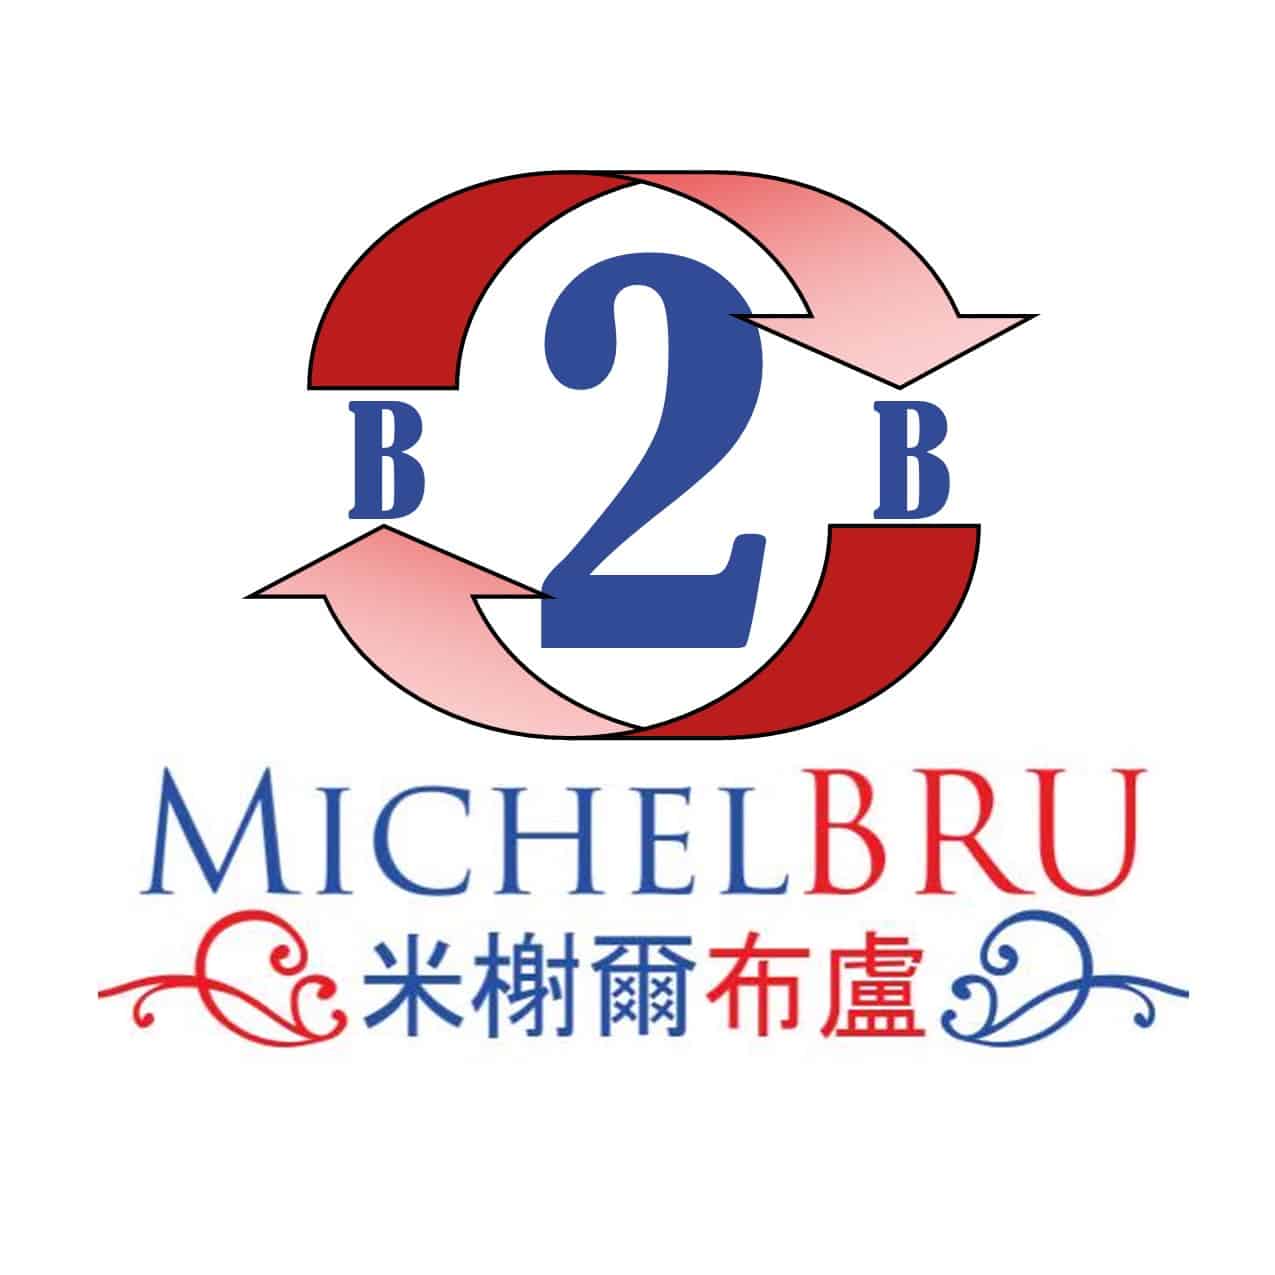 合作伙伴和附屬计划 米榭爾布盧 MichelBru 18